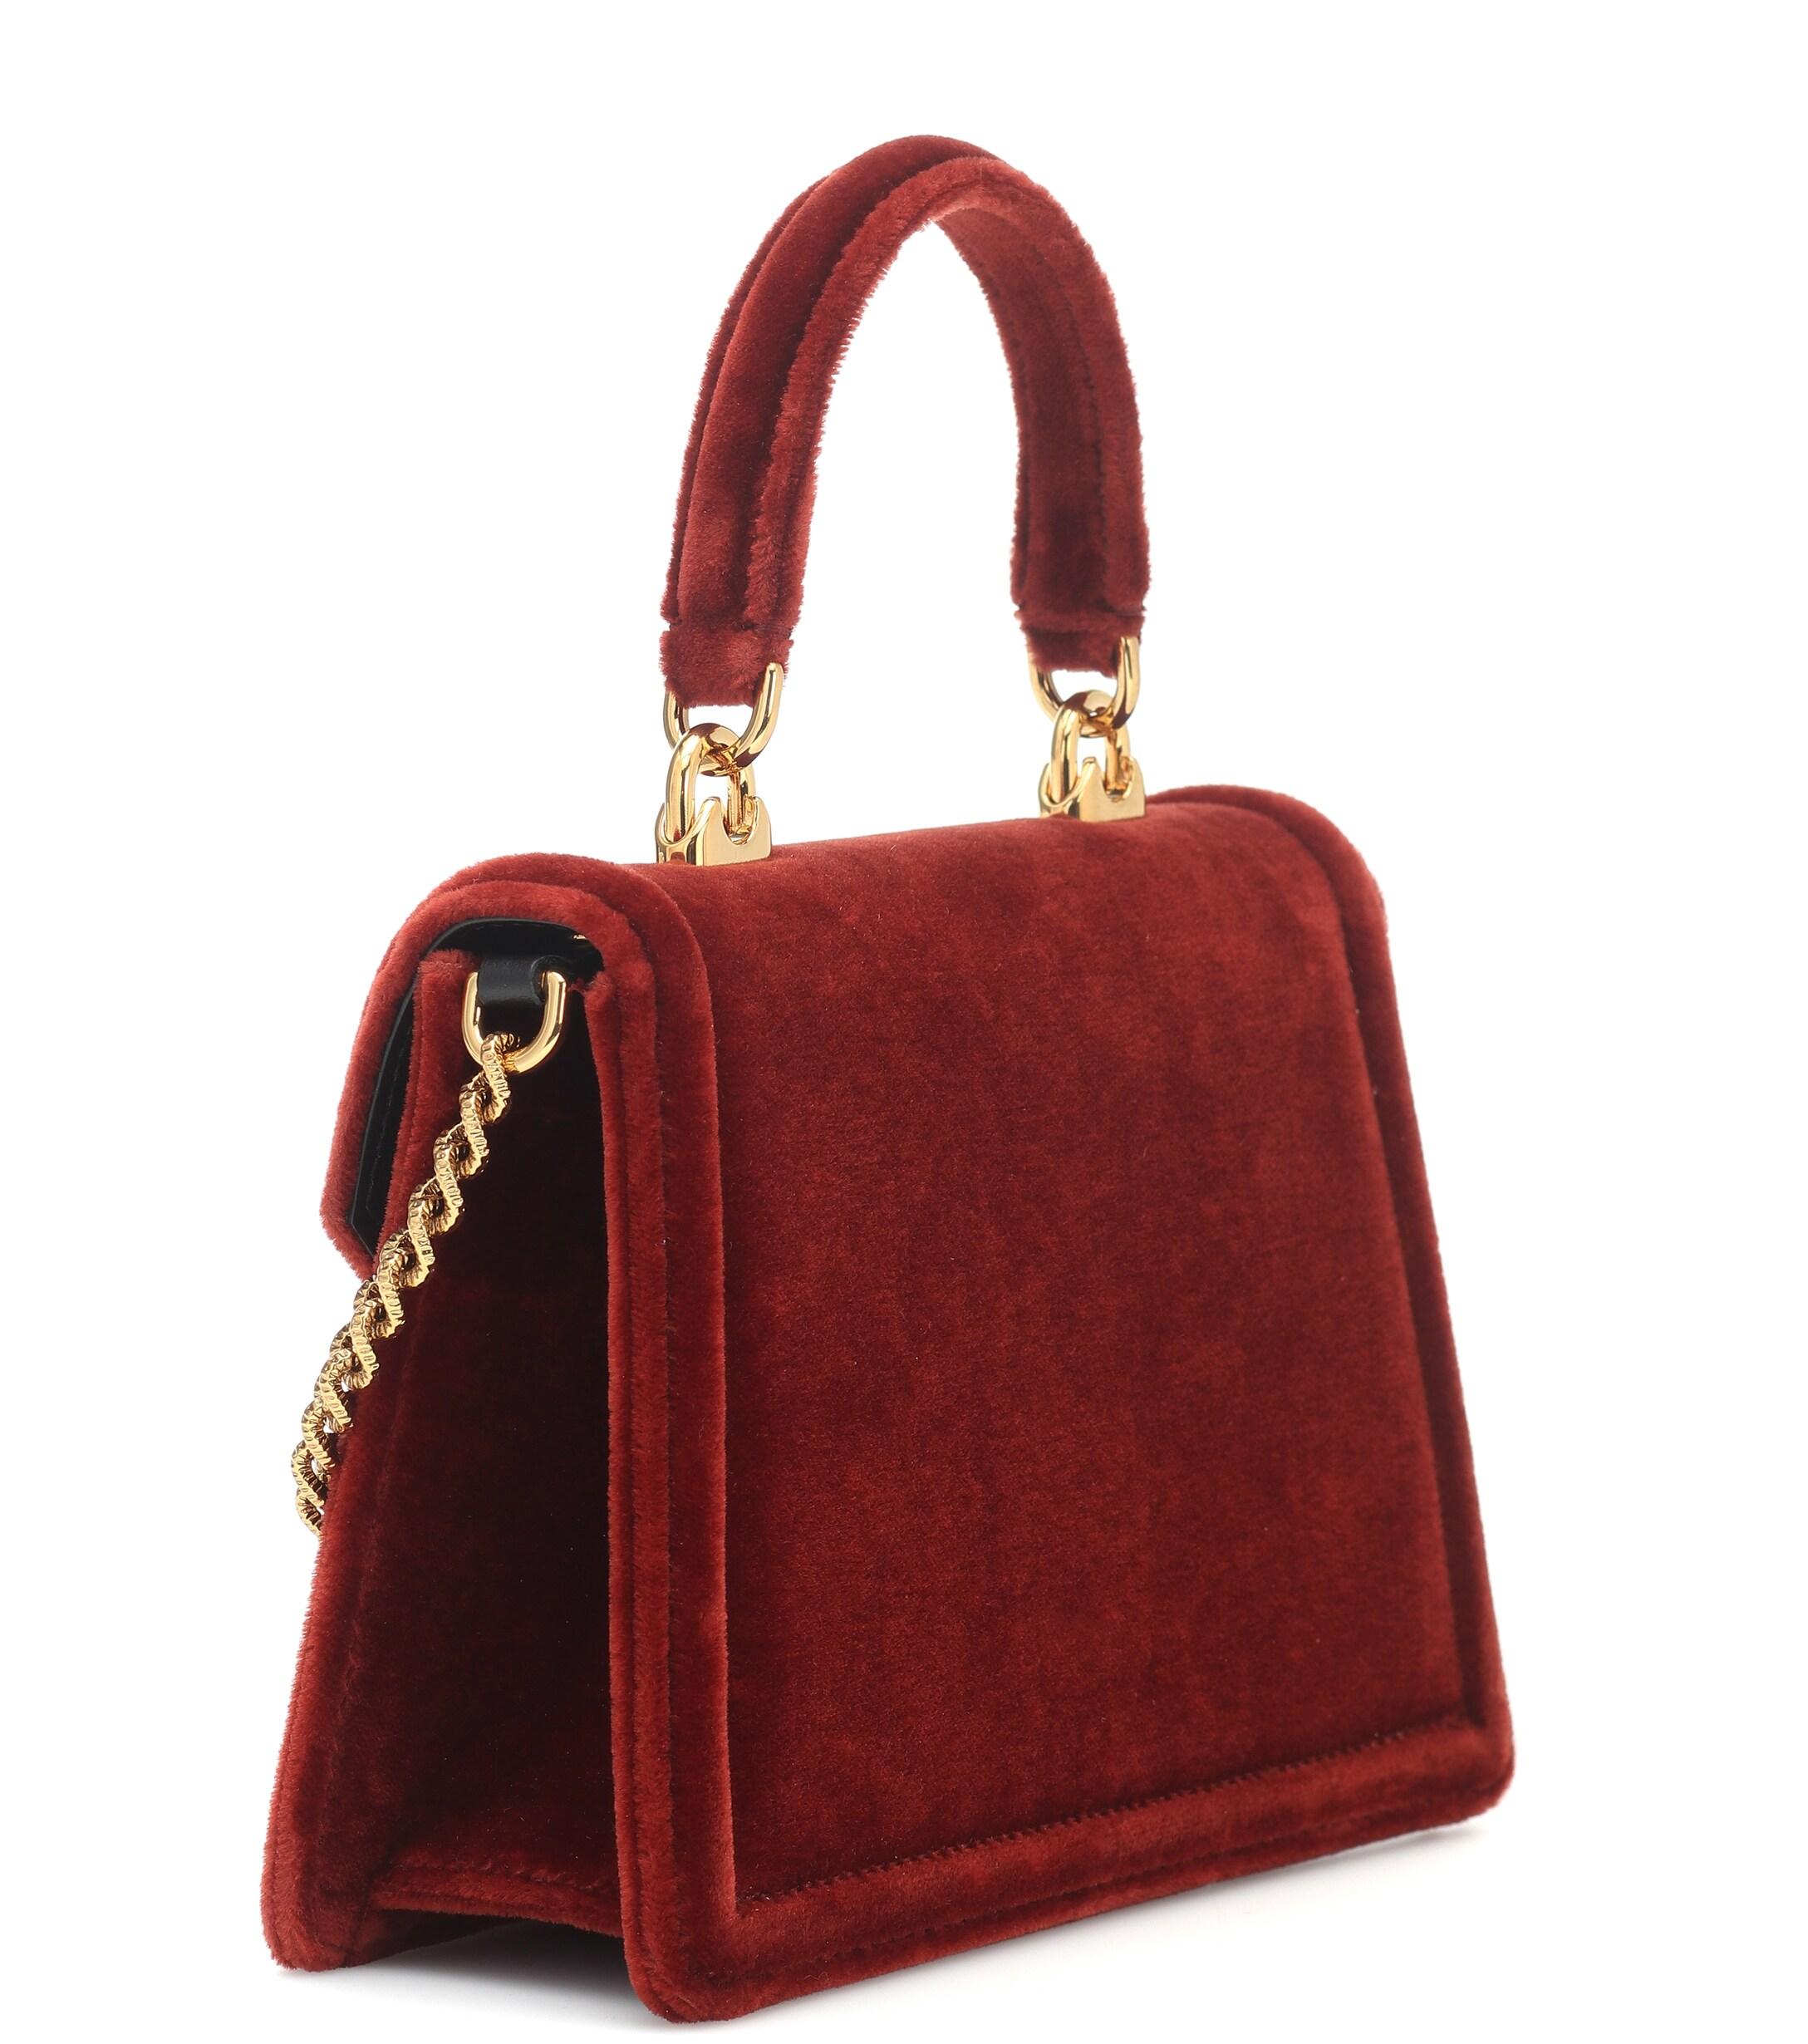 Dolce & Gabbana Devotion Small Velvet Shoulder Bag in Red - Lyst